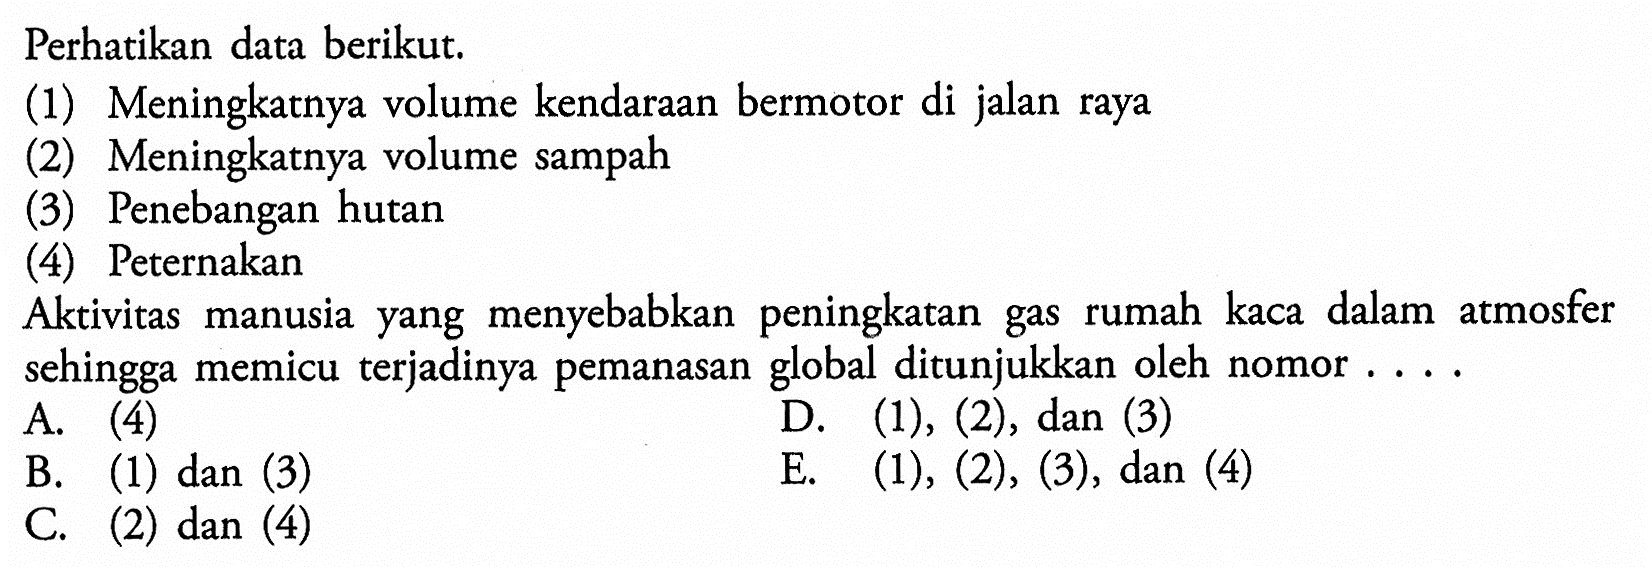 Perhatikan data berikut.(1) Meningkatnya volume kendaraan bermotor di jalan raya(2) Meningkatnya volume sampah(3) Penebangan hutan(4) PeternakanAktivitas manusia yang menyebabkan peningkatan gas rumah kaca dalam atmosfer sehingga memicu terjadinya pemanasan global ditunjukkan oleh nomor ....A. (4)B. (1) dan (3)D. (1),(2) , dan (3)C. (2) dan (4)E. (1),(2),(3) , dan (4)